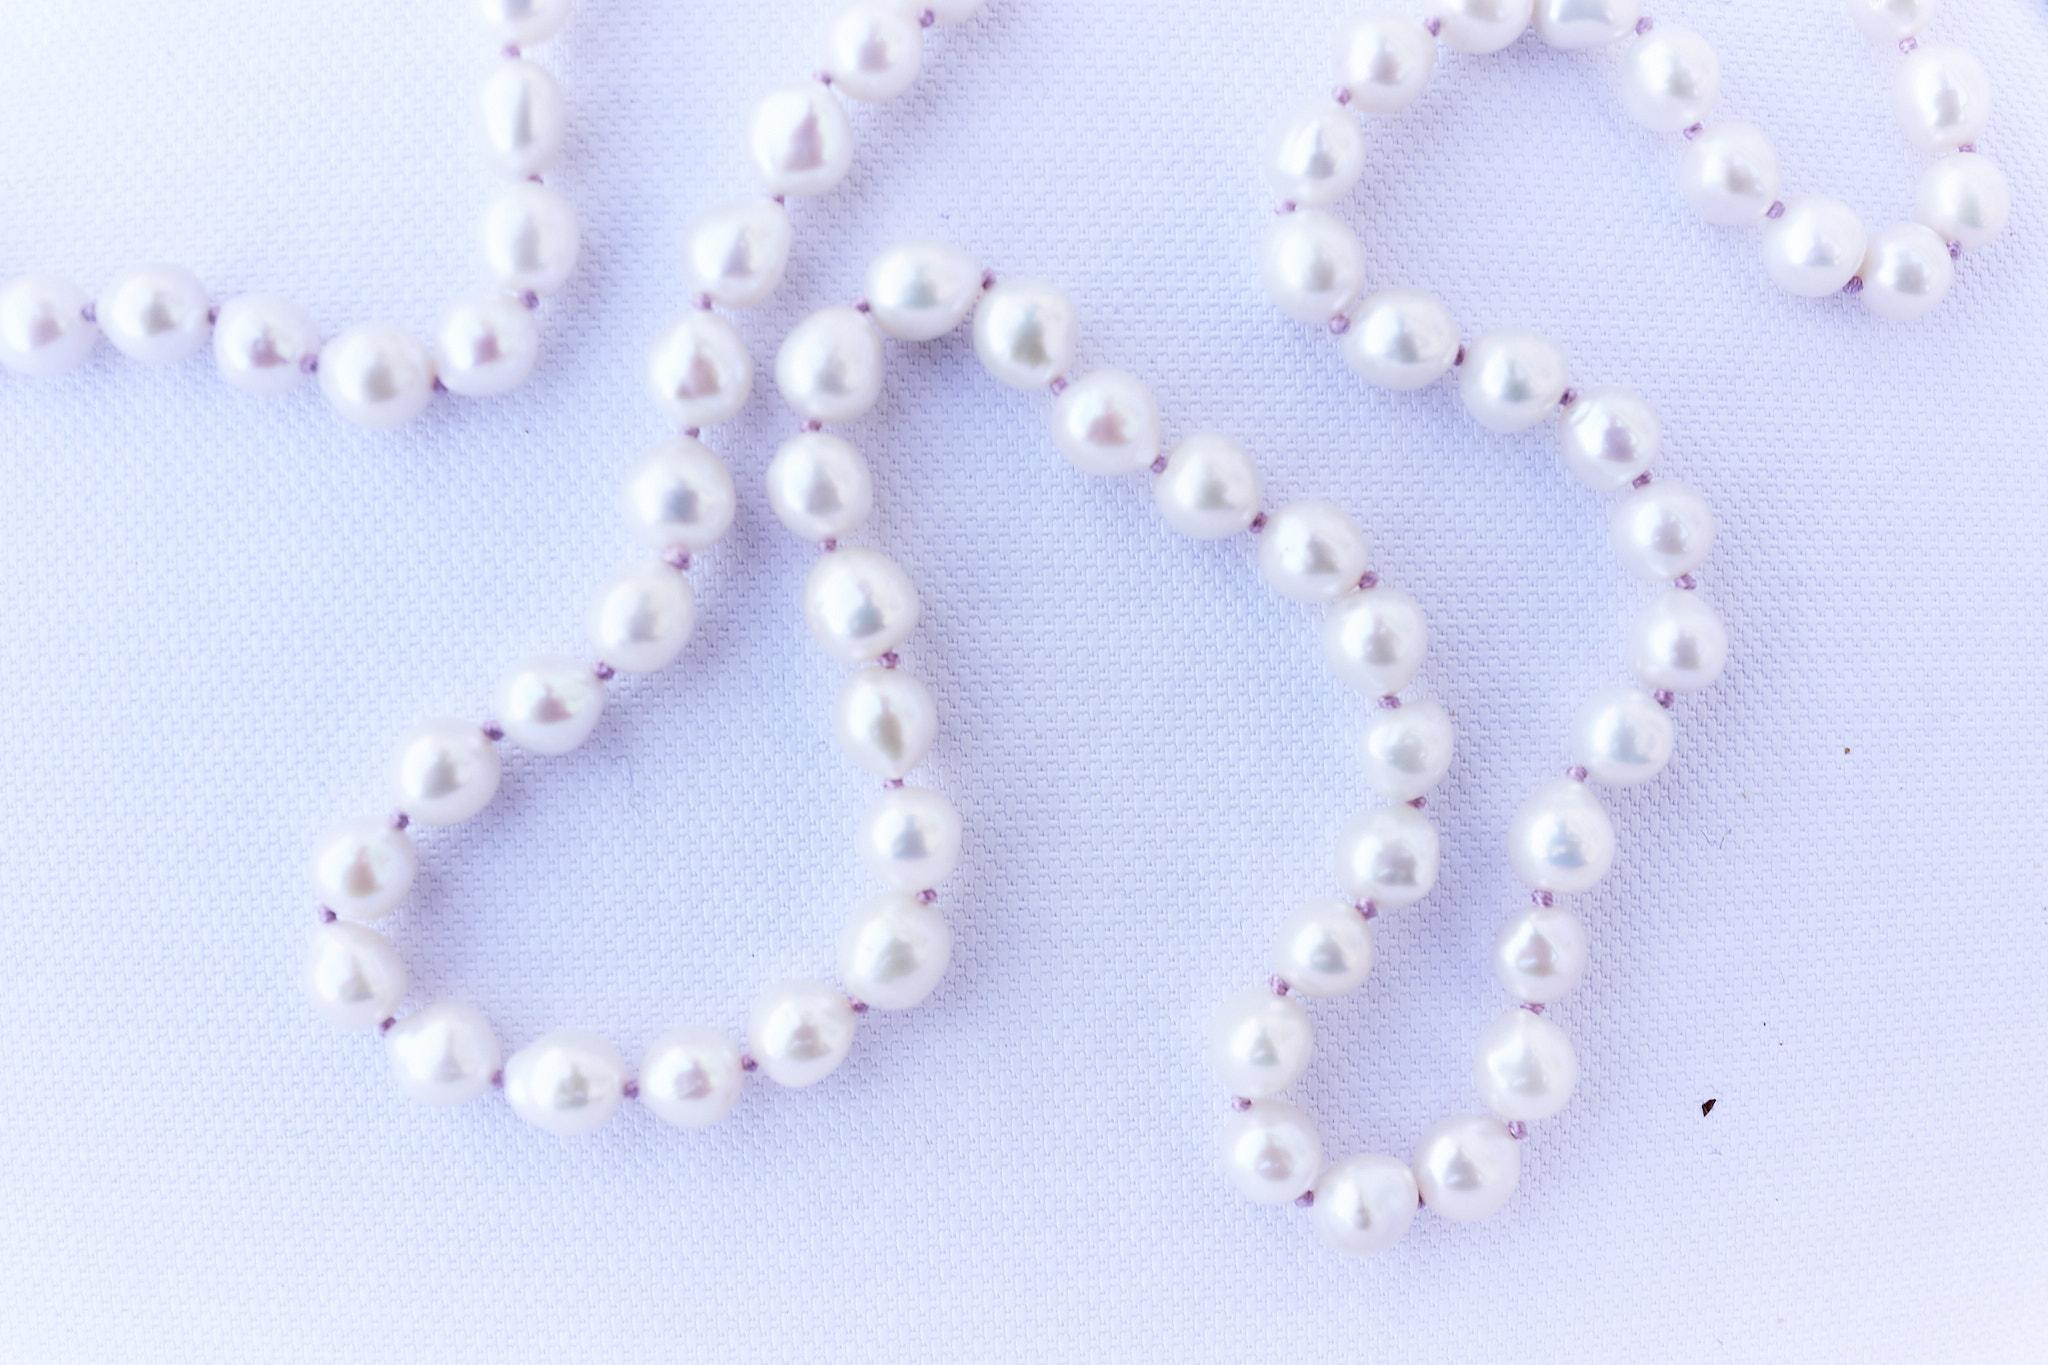 Collier de perles blanches perlées sur chaîne en argent avec fil de soie lilas
36